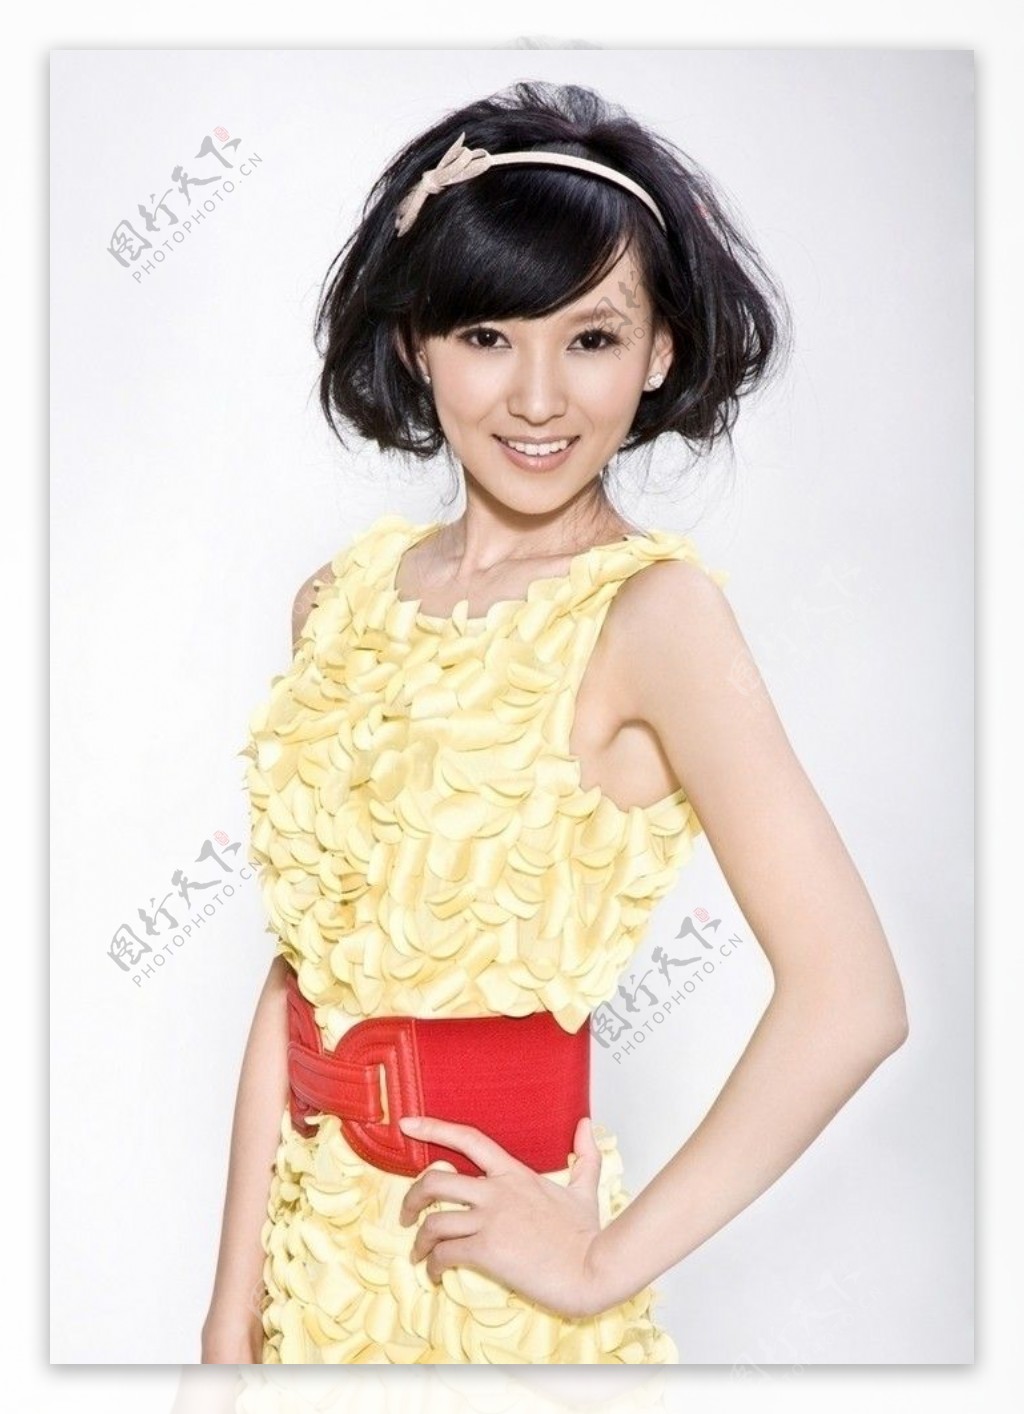 亚丽黄裙红腰带写真图片